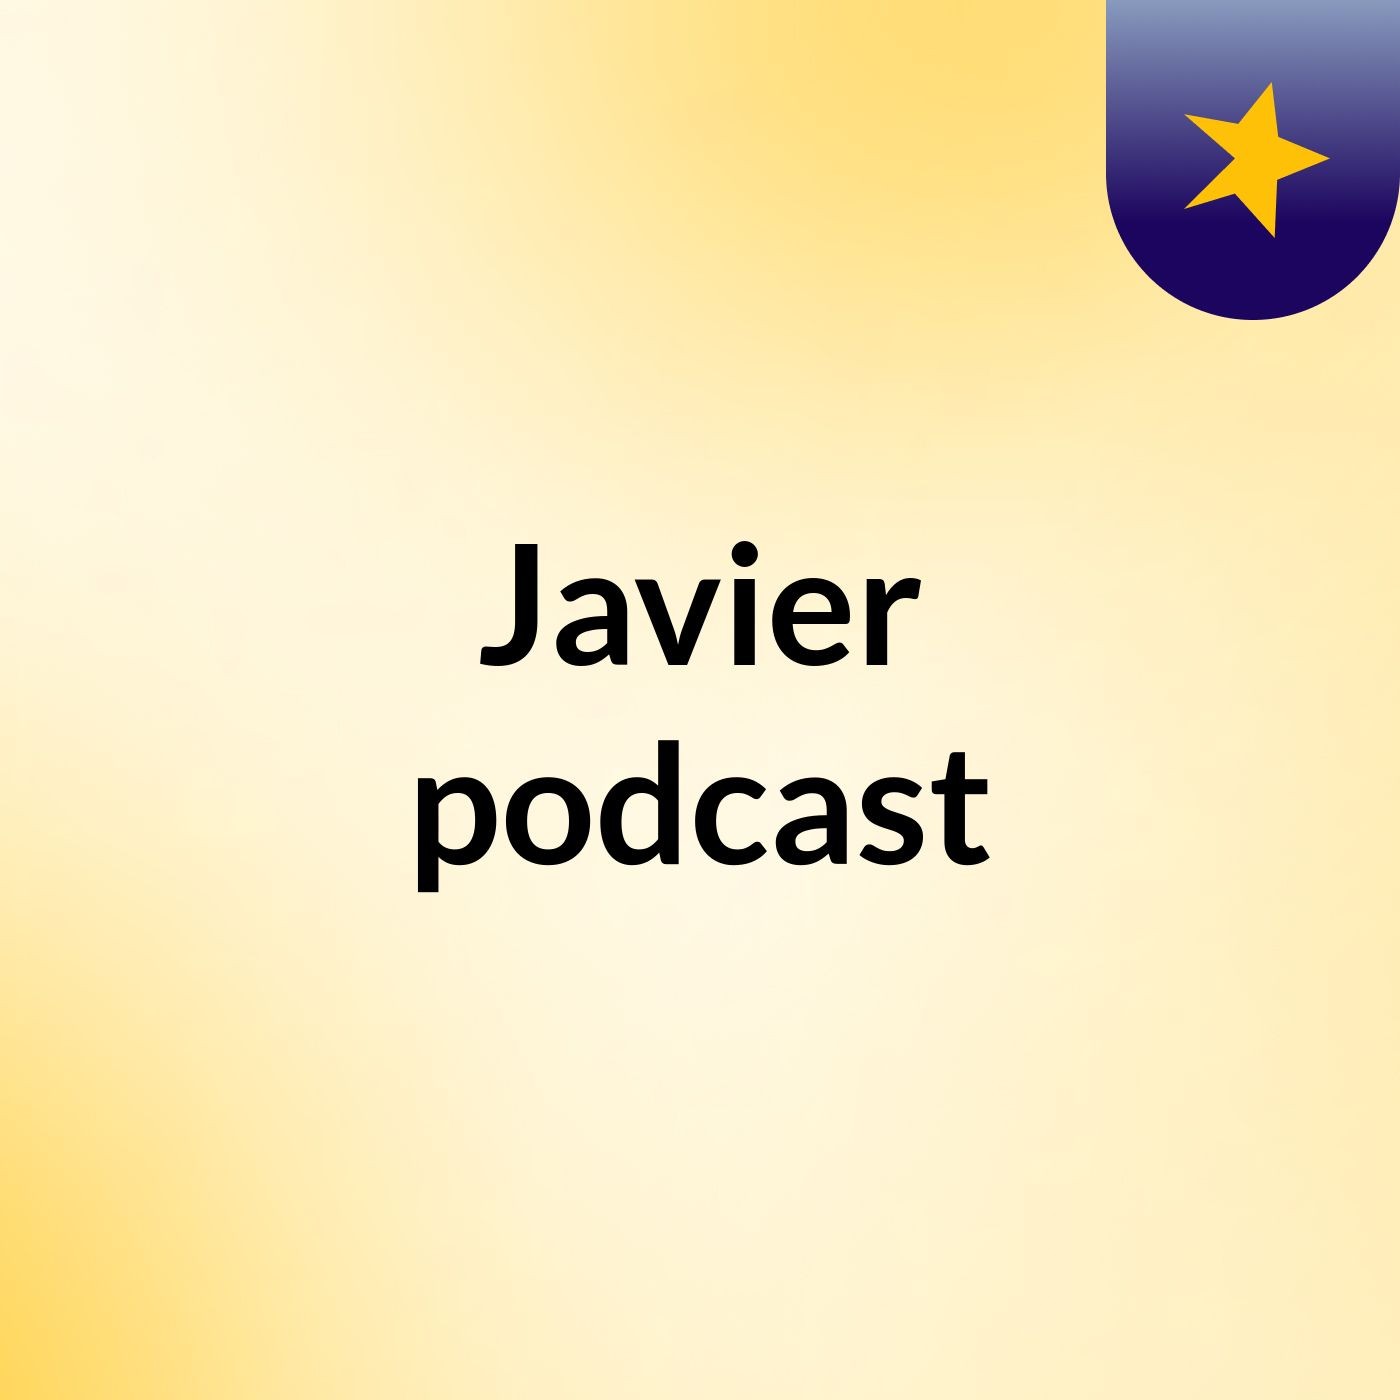 Javier podcast